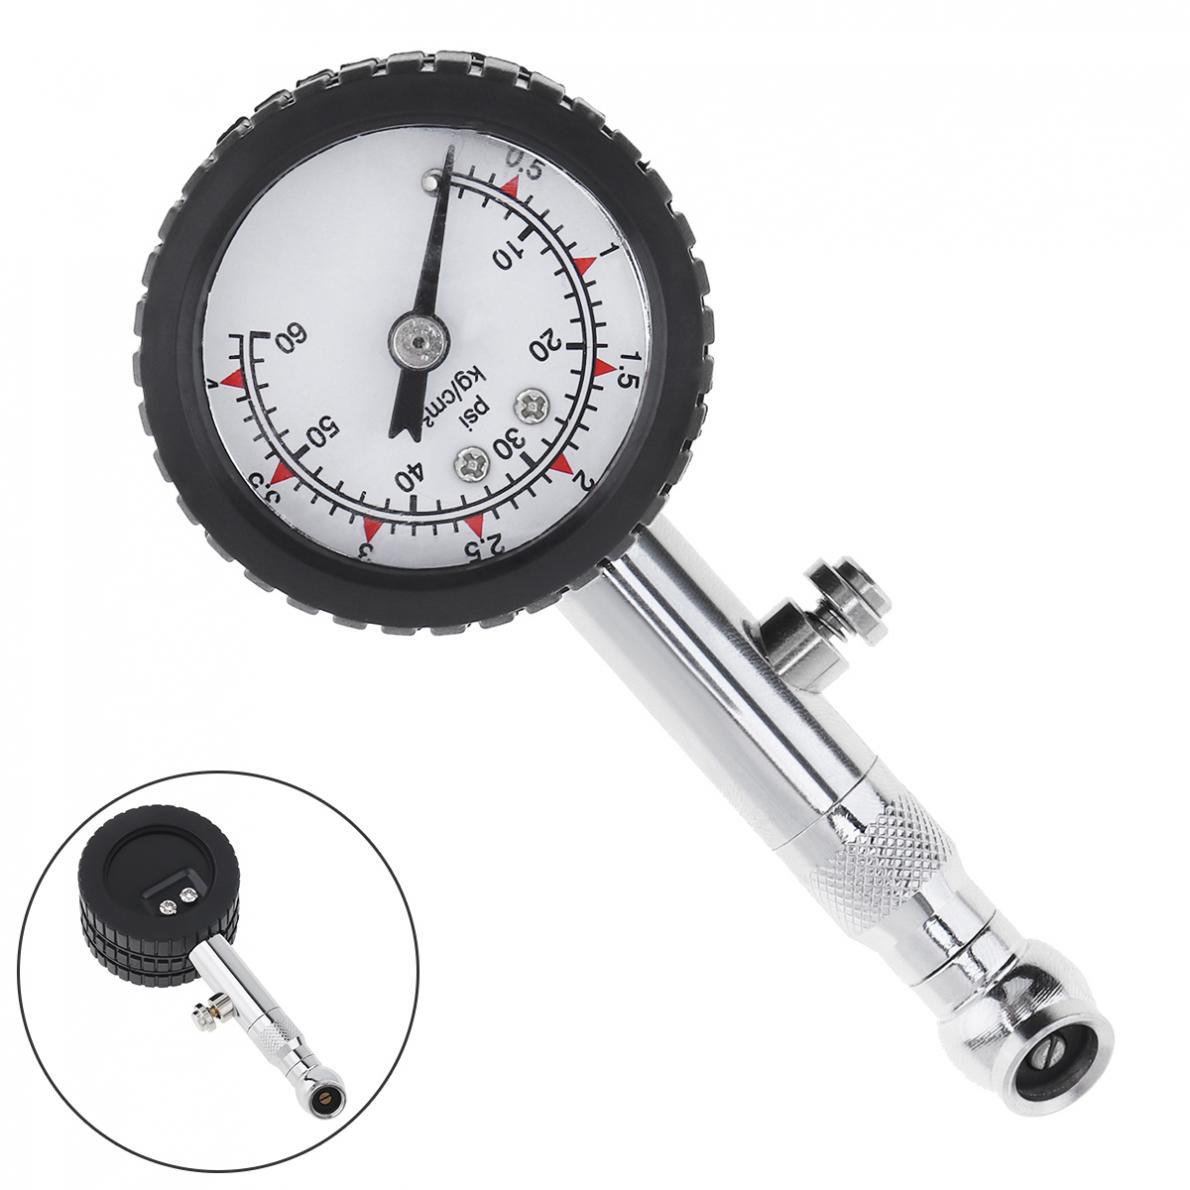 Motor Car Truck Bike Tyre Tire Air Pressure Gauge Dial Meter Tester 0-100 PSI 